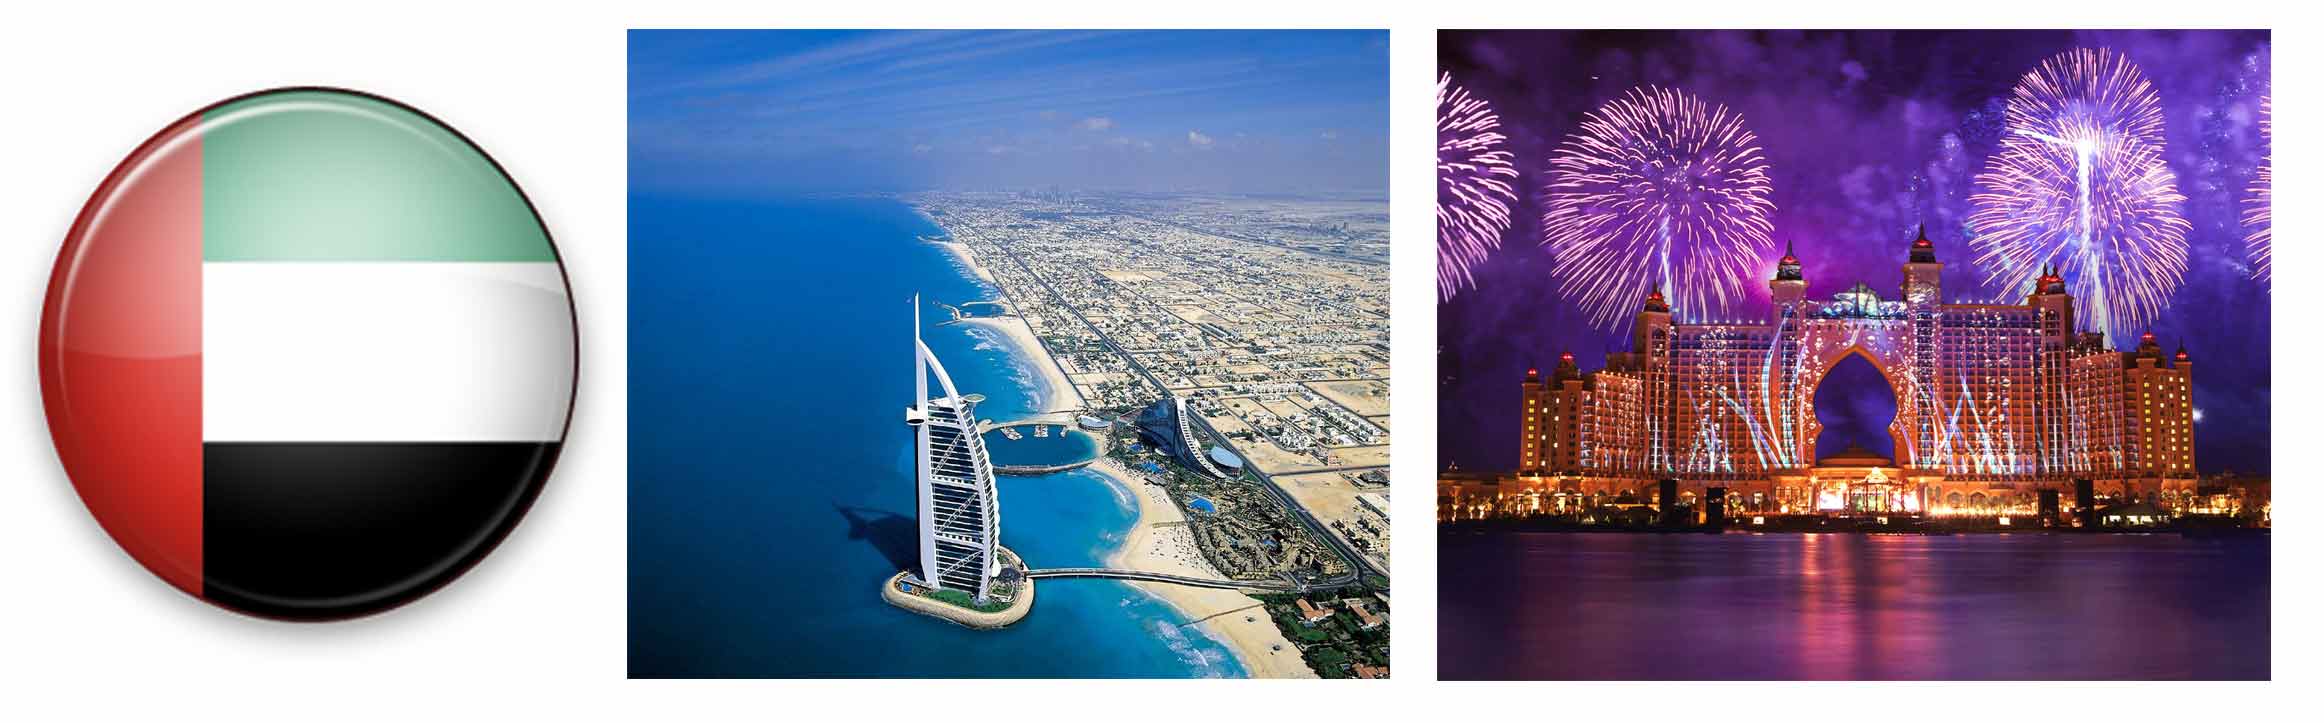 Виза в ОАЭ (Объединенные Арабские Эмираты)